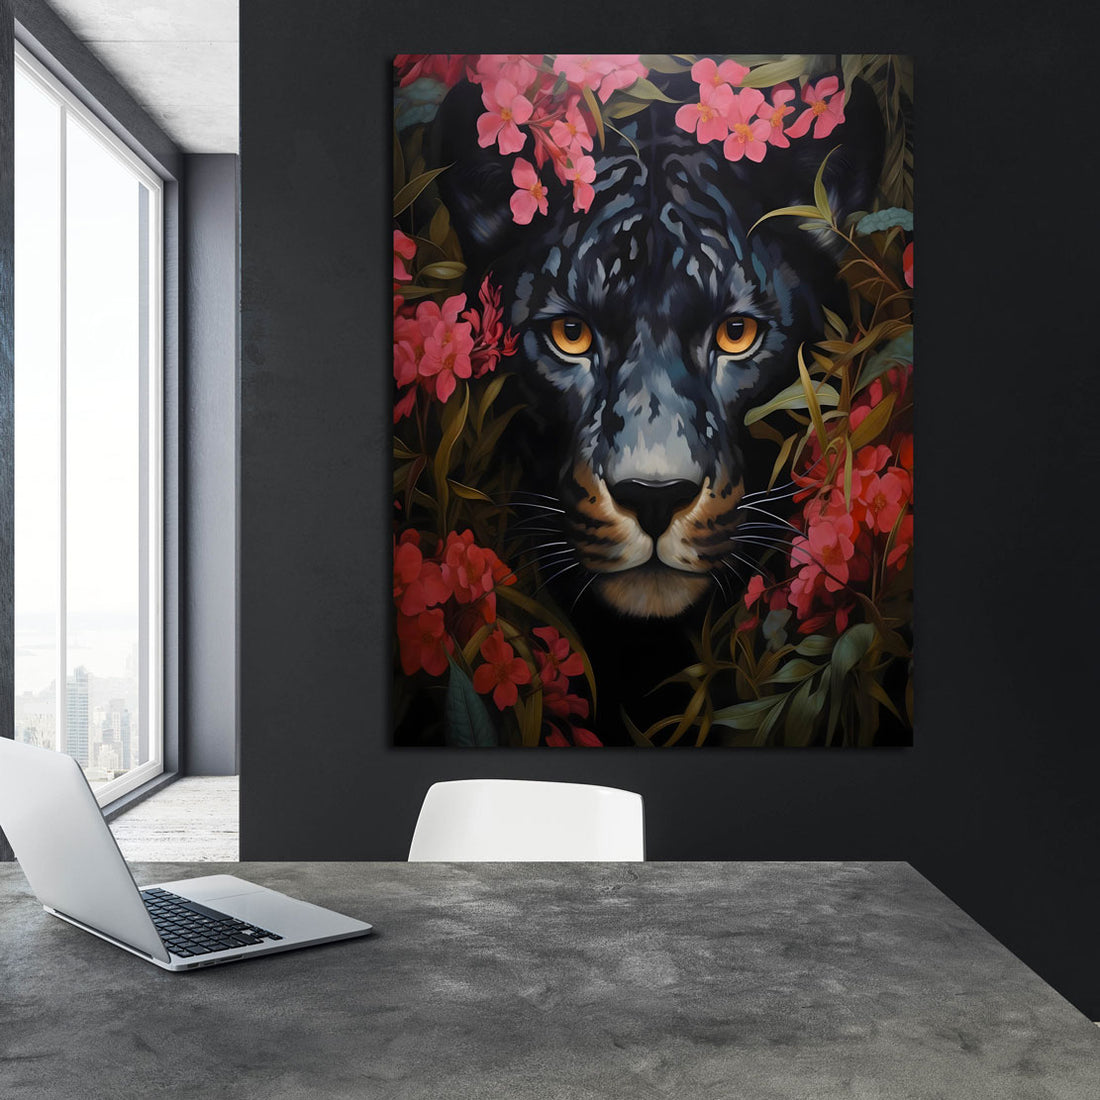 Wandbild abstrakt mit schwarzer Panther